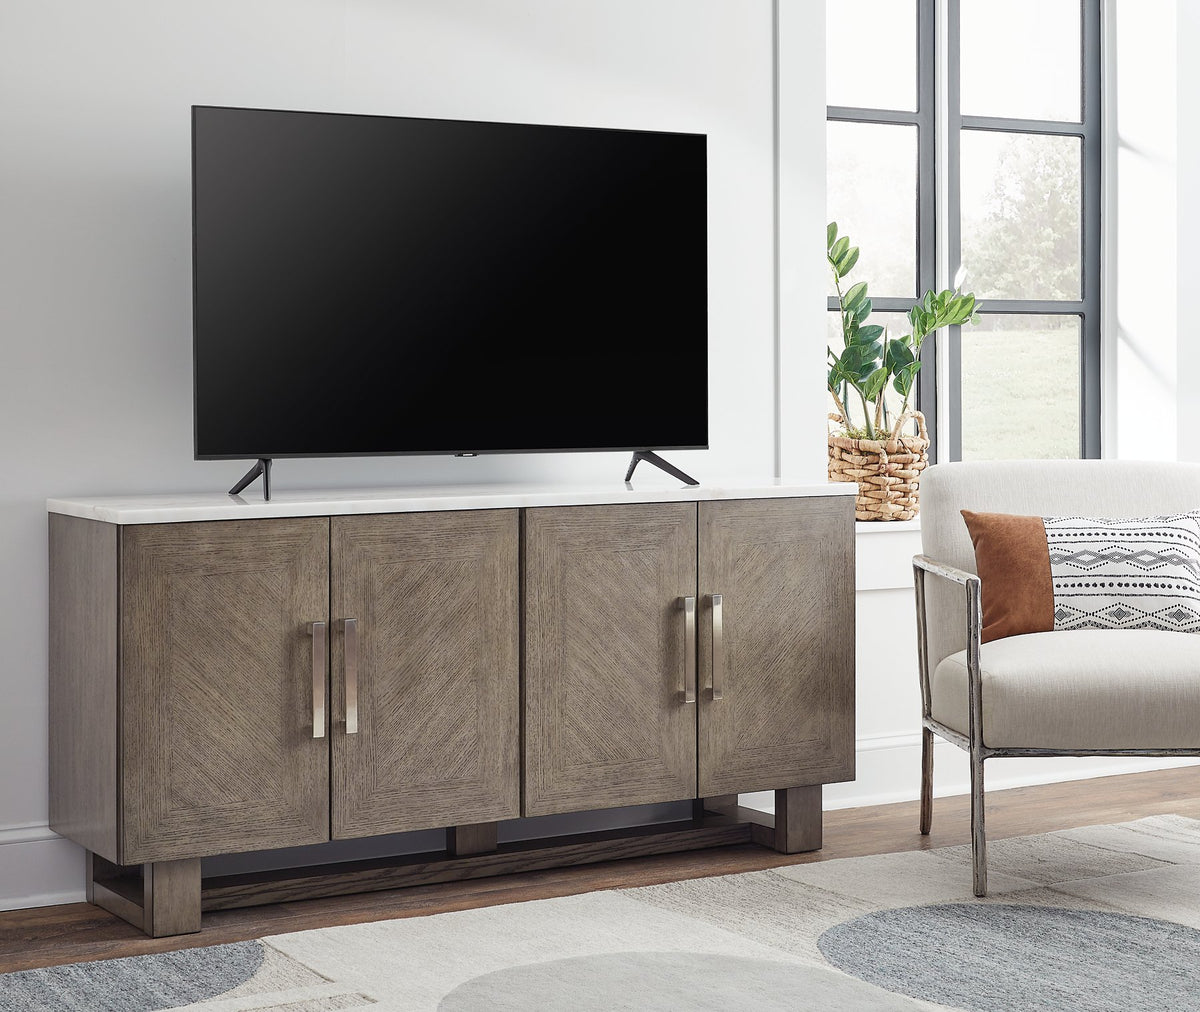 Loyaska 68" TV Stand - Half Price Furniture